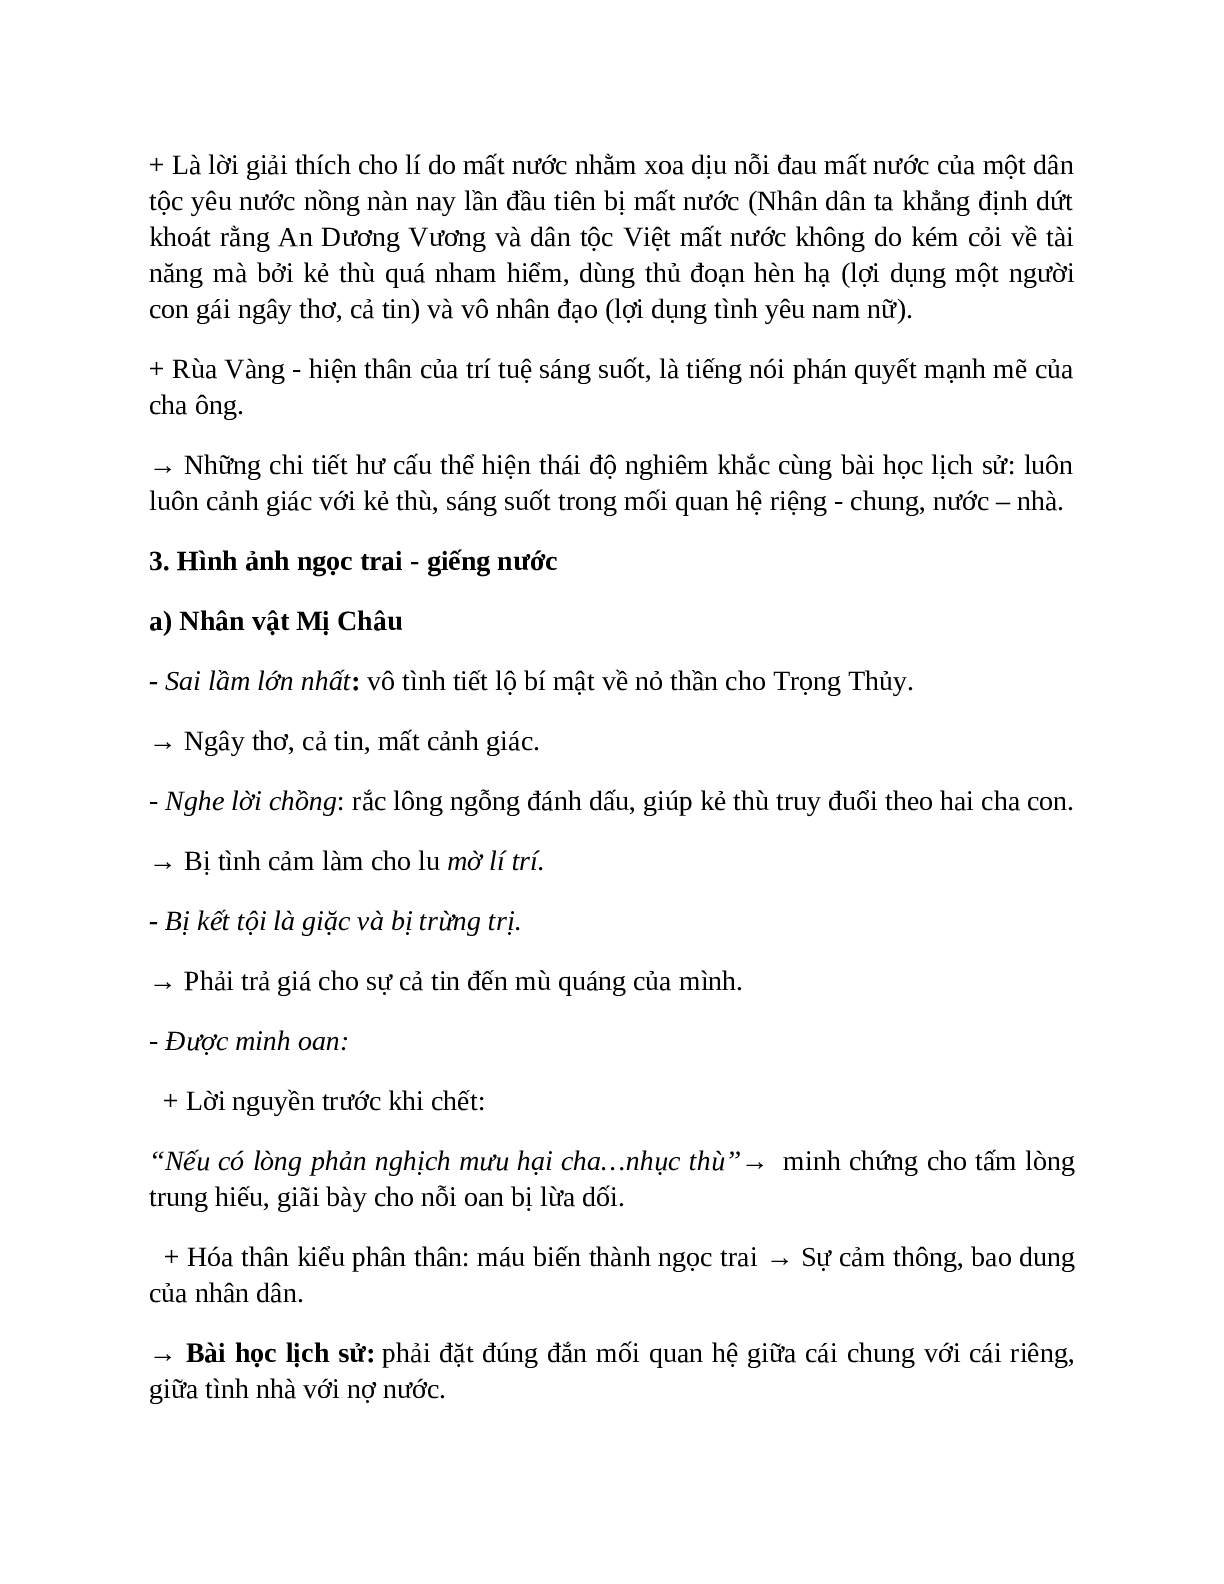 Sơ đồ tư duy bài Truyện An Dương Vương và Mị Châu – Trọng Thủy dễ nhớ, ngắn nhất - Ngữ văn lớp 10 (trang 5)